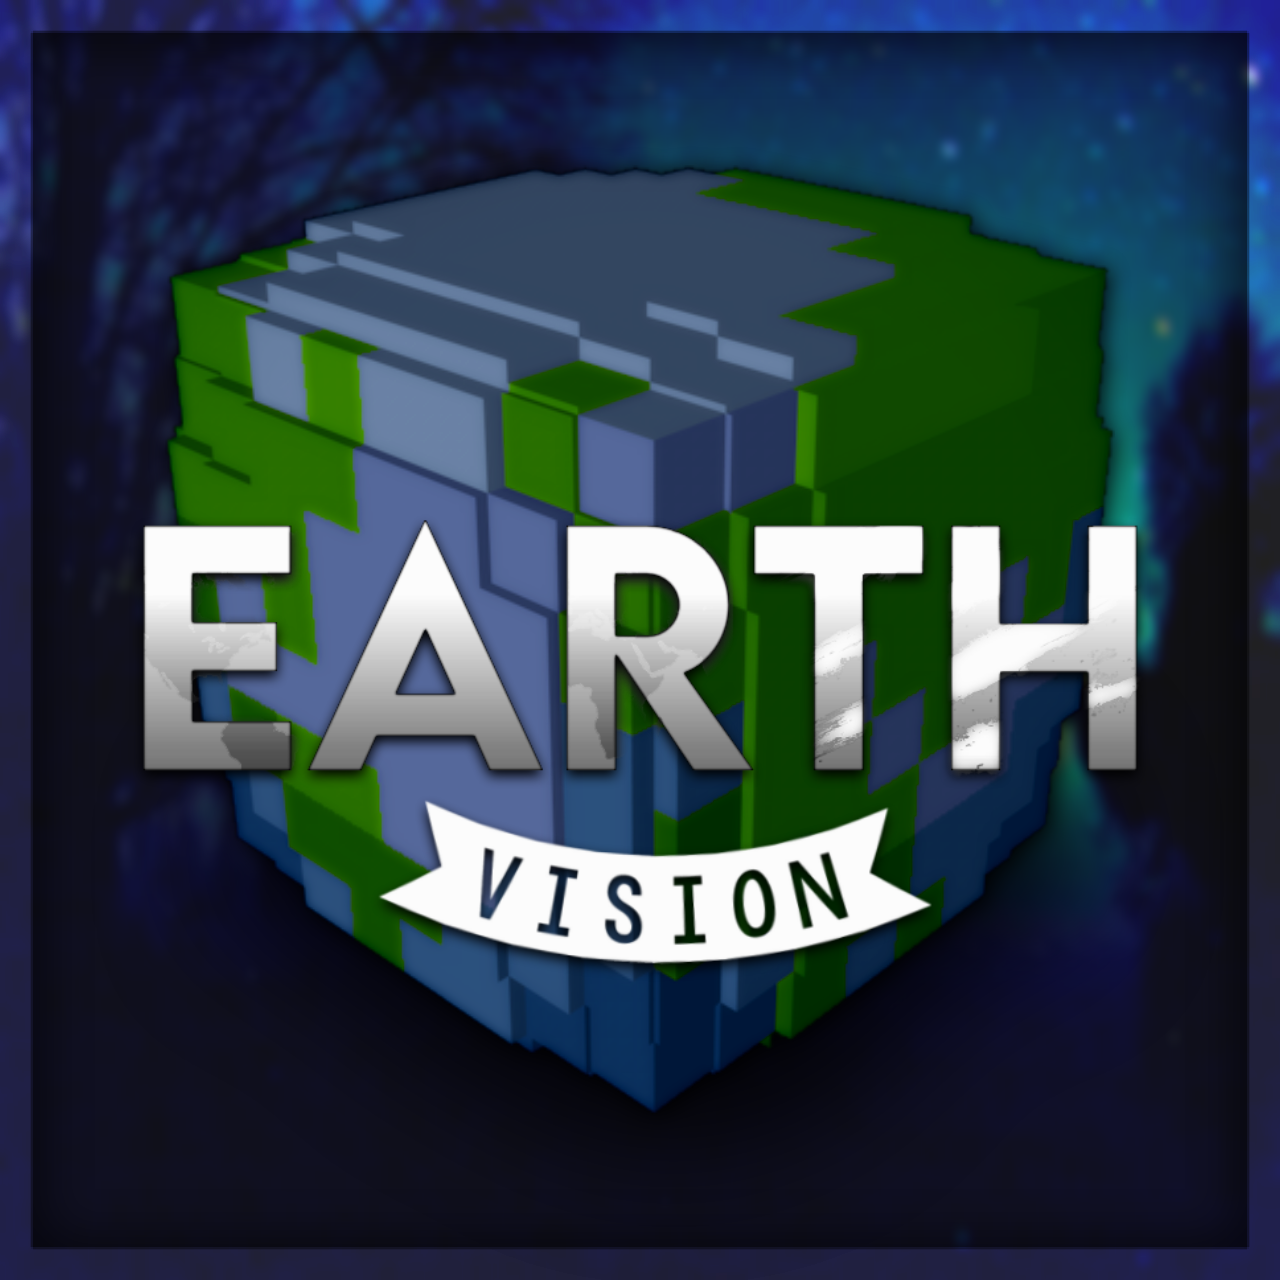 EarthMC - The Minecraft earth server